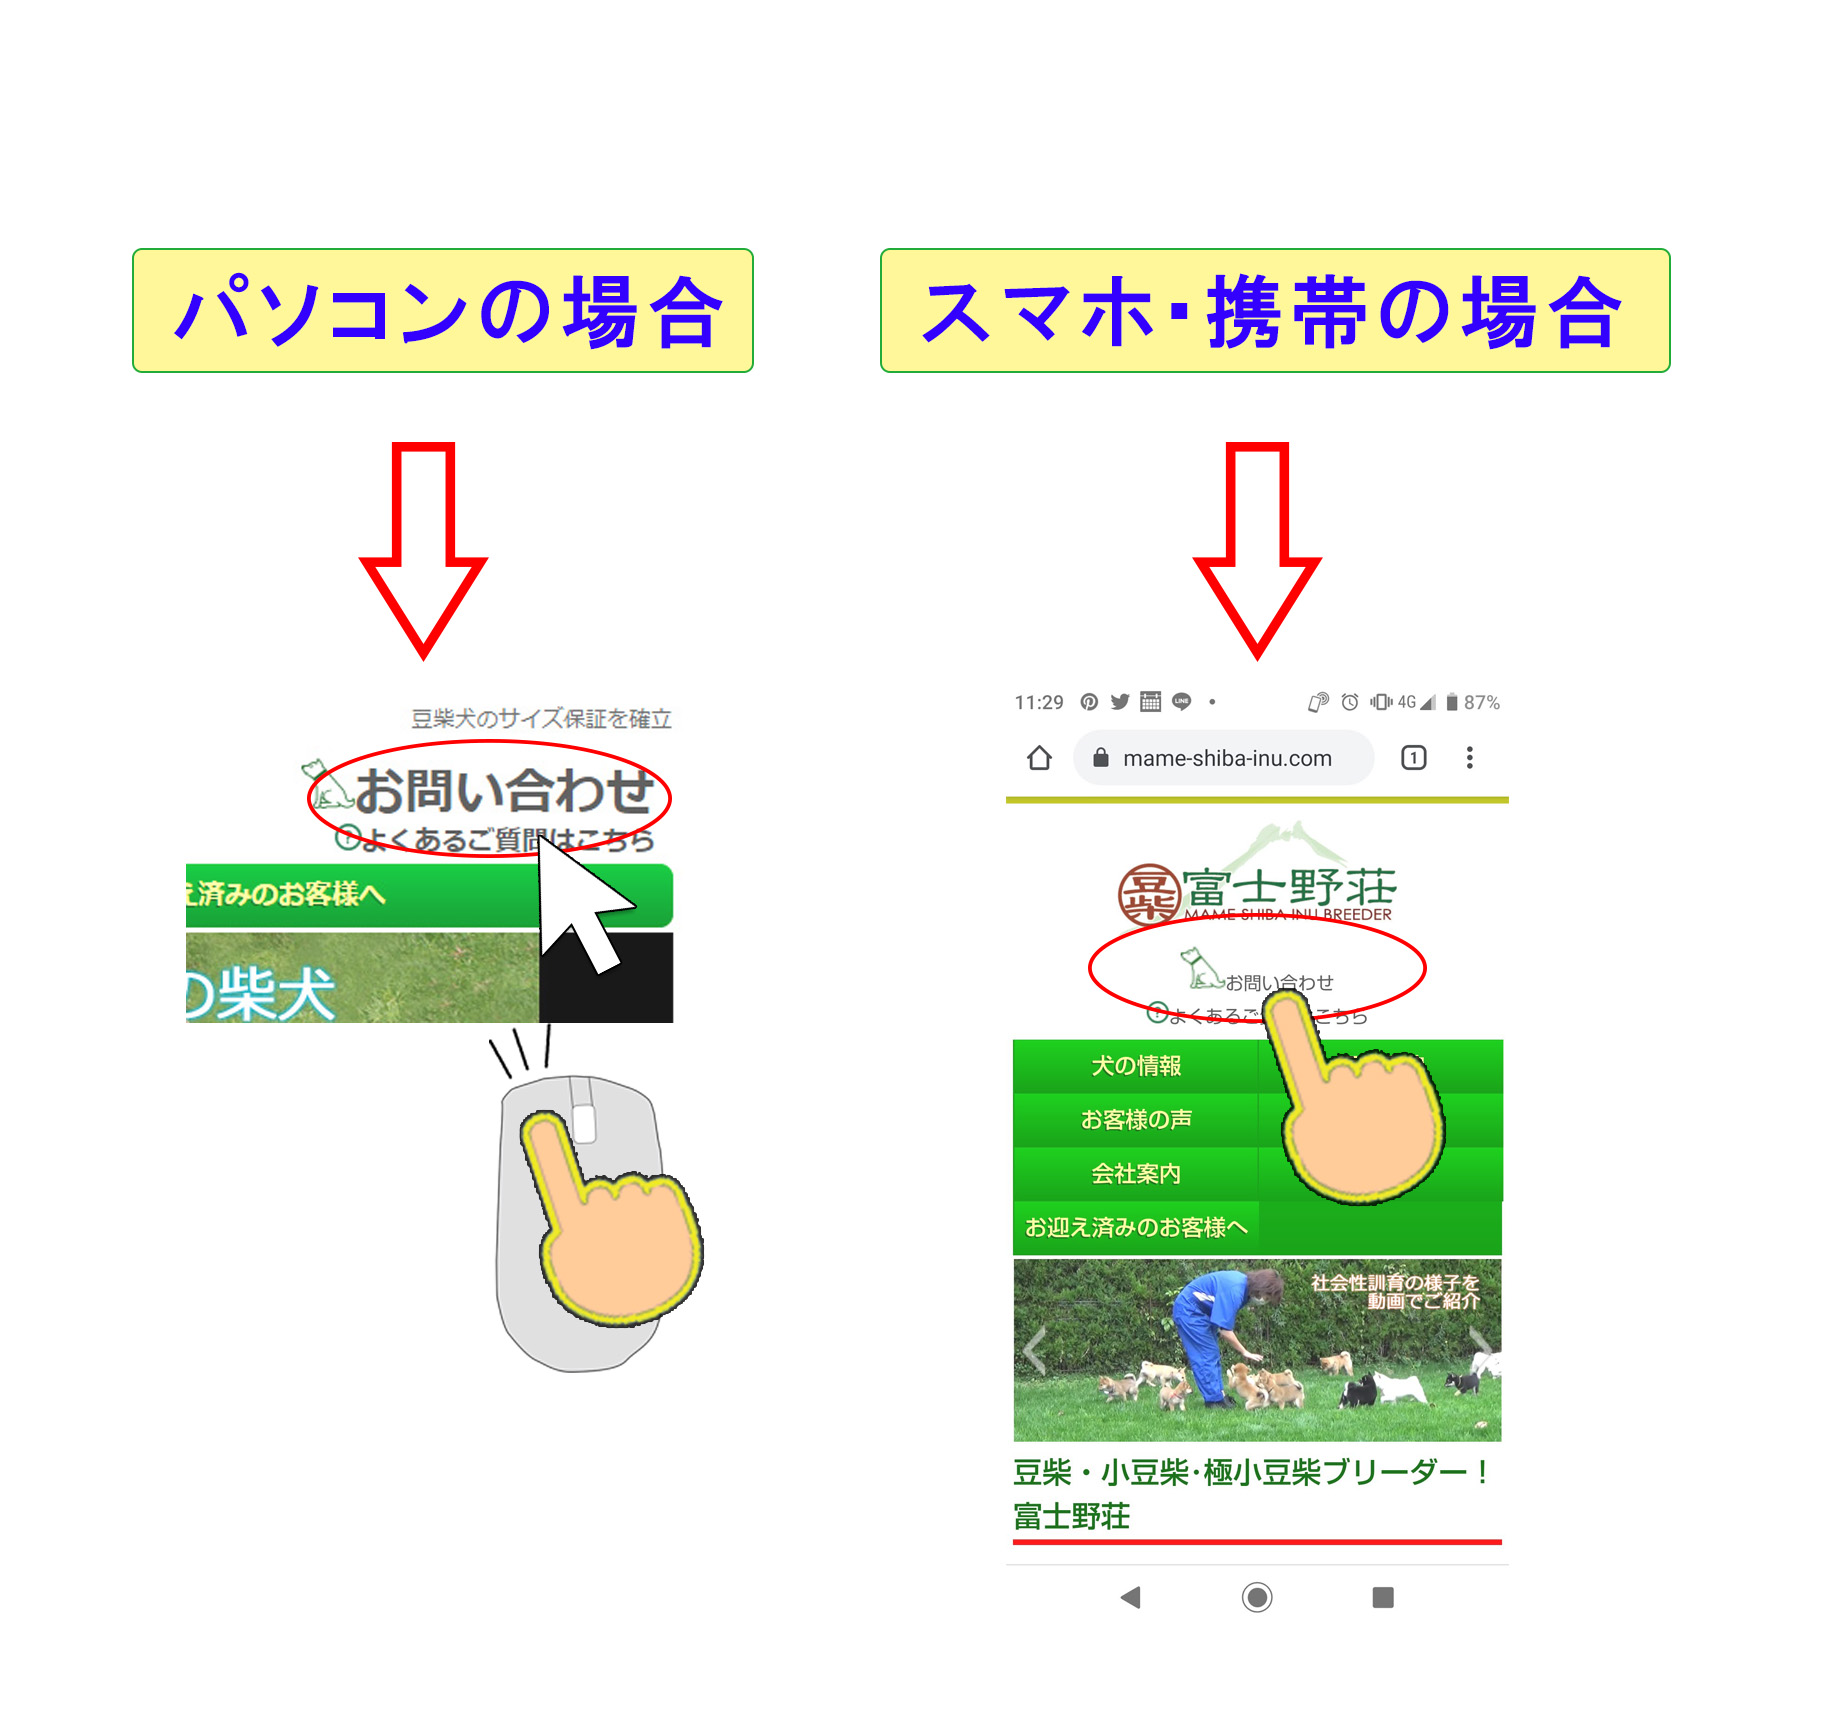 富士野荘のパソコンの場合とスマホ携帯からの場合のお問合せの方法クリック場所の画像